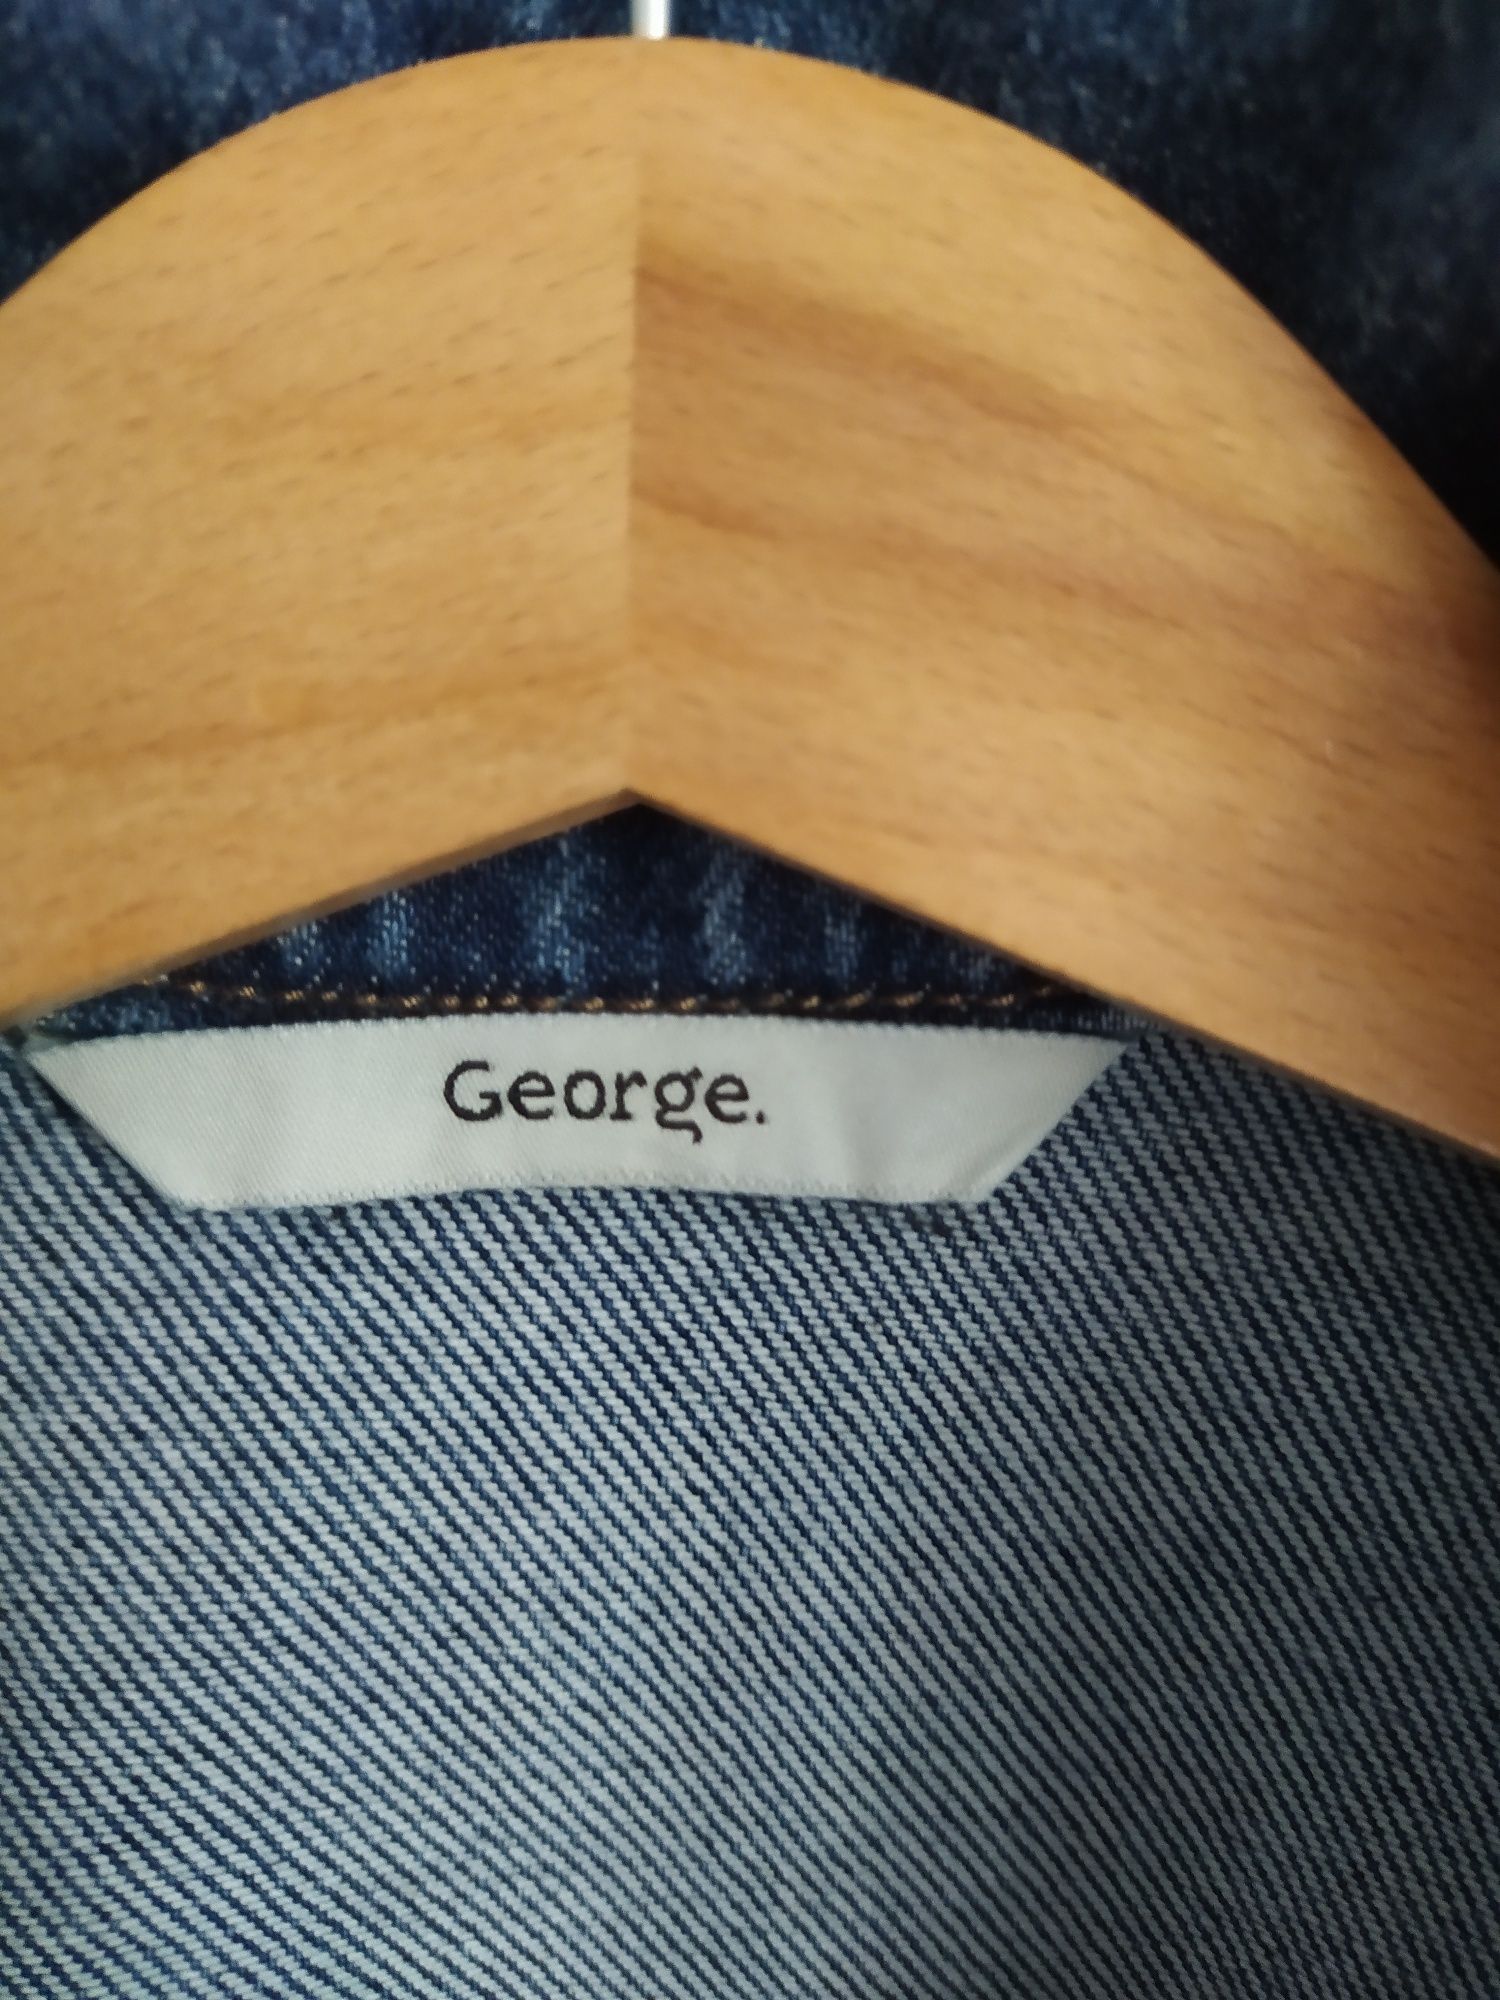 Dłuższa kurtka dżinsowa, dziewczęca nieocieplana George 110-116 cm